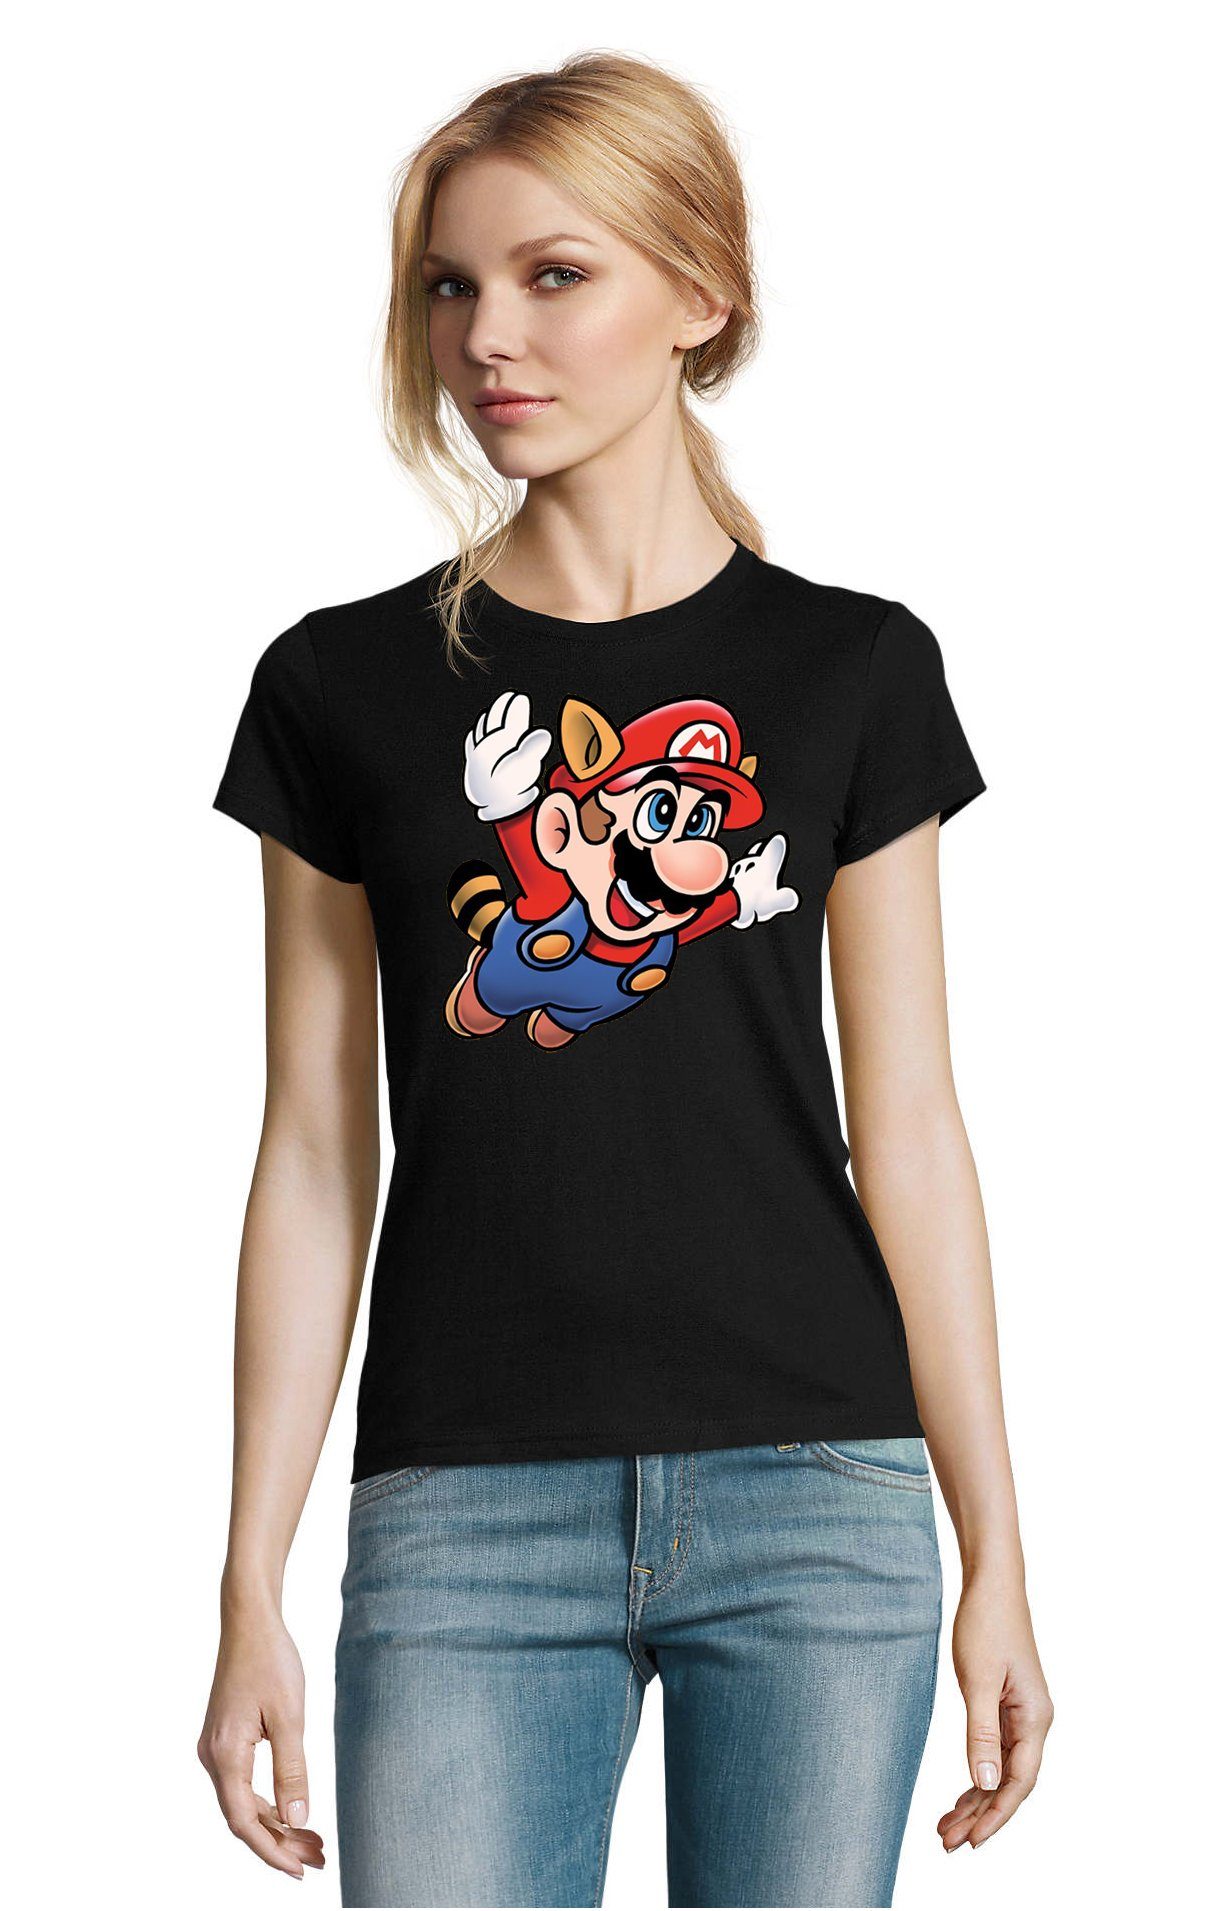 Blondie & Brownie T-Shirt Damen Super Mario 3 Fligh Super Retro Konsole Gamer Nerd